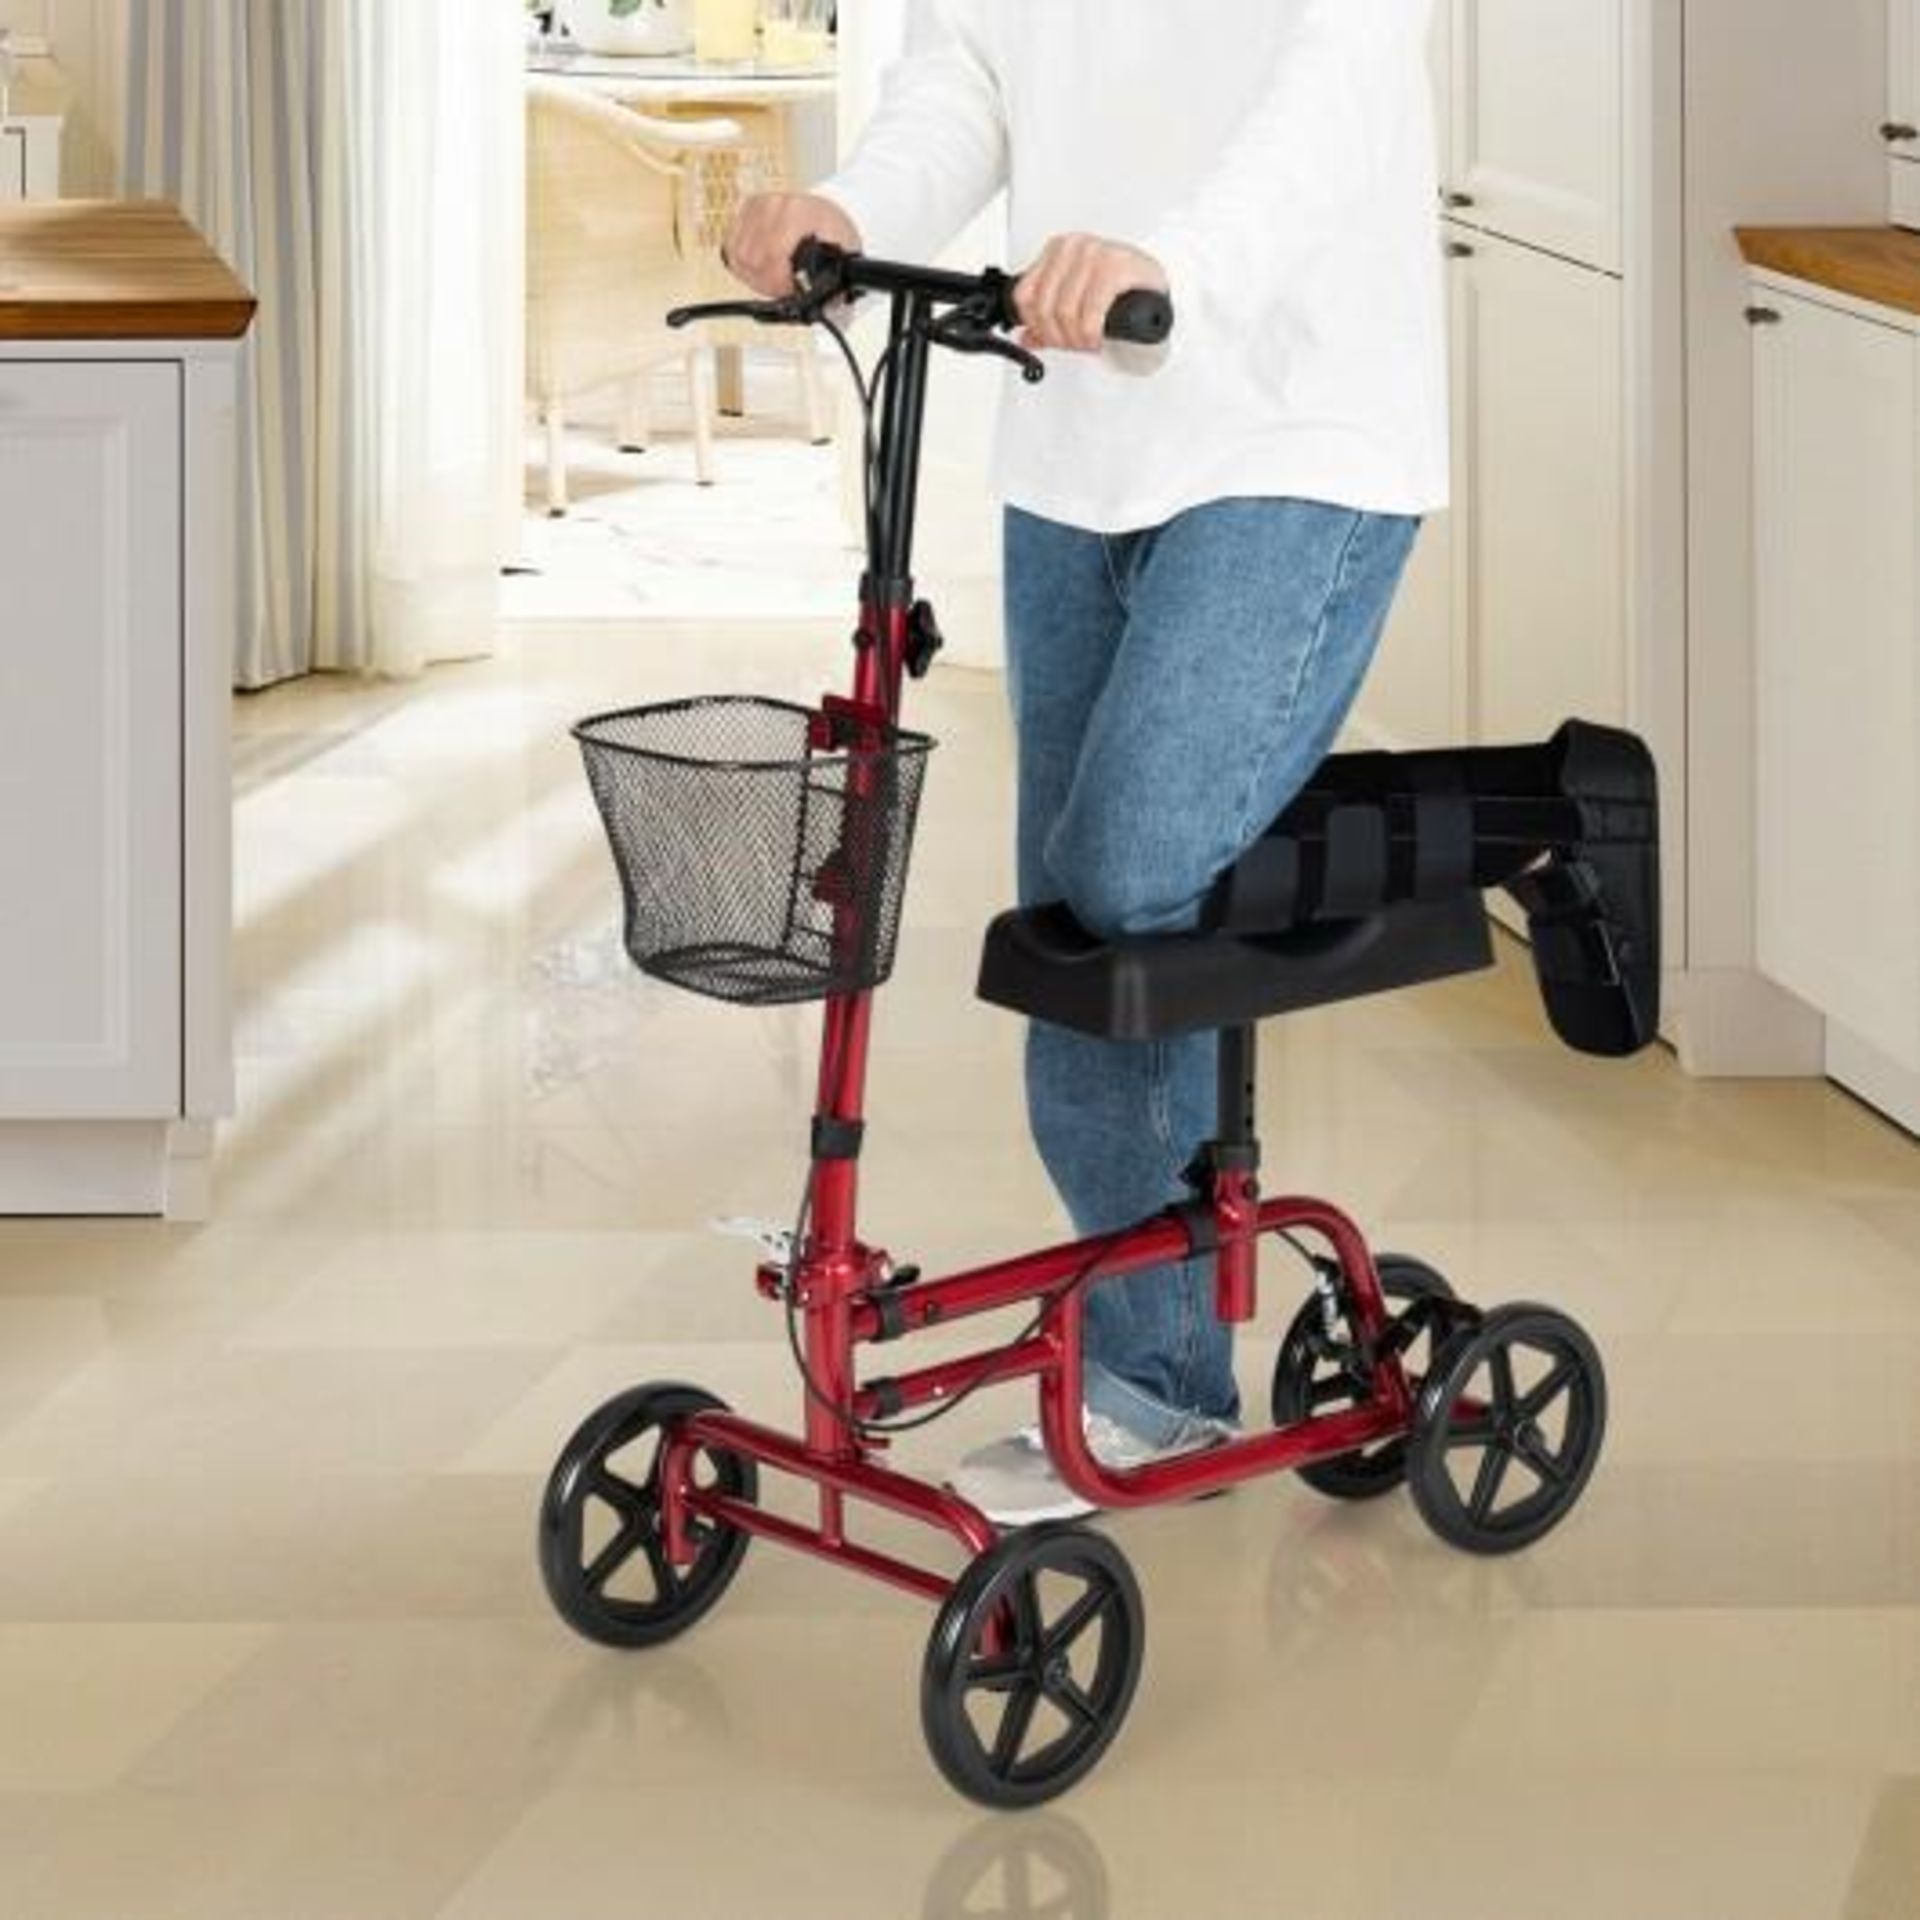 Adjustable Steerable Knee Walker Folding Scooter with Brake Red - ER54